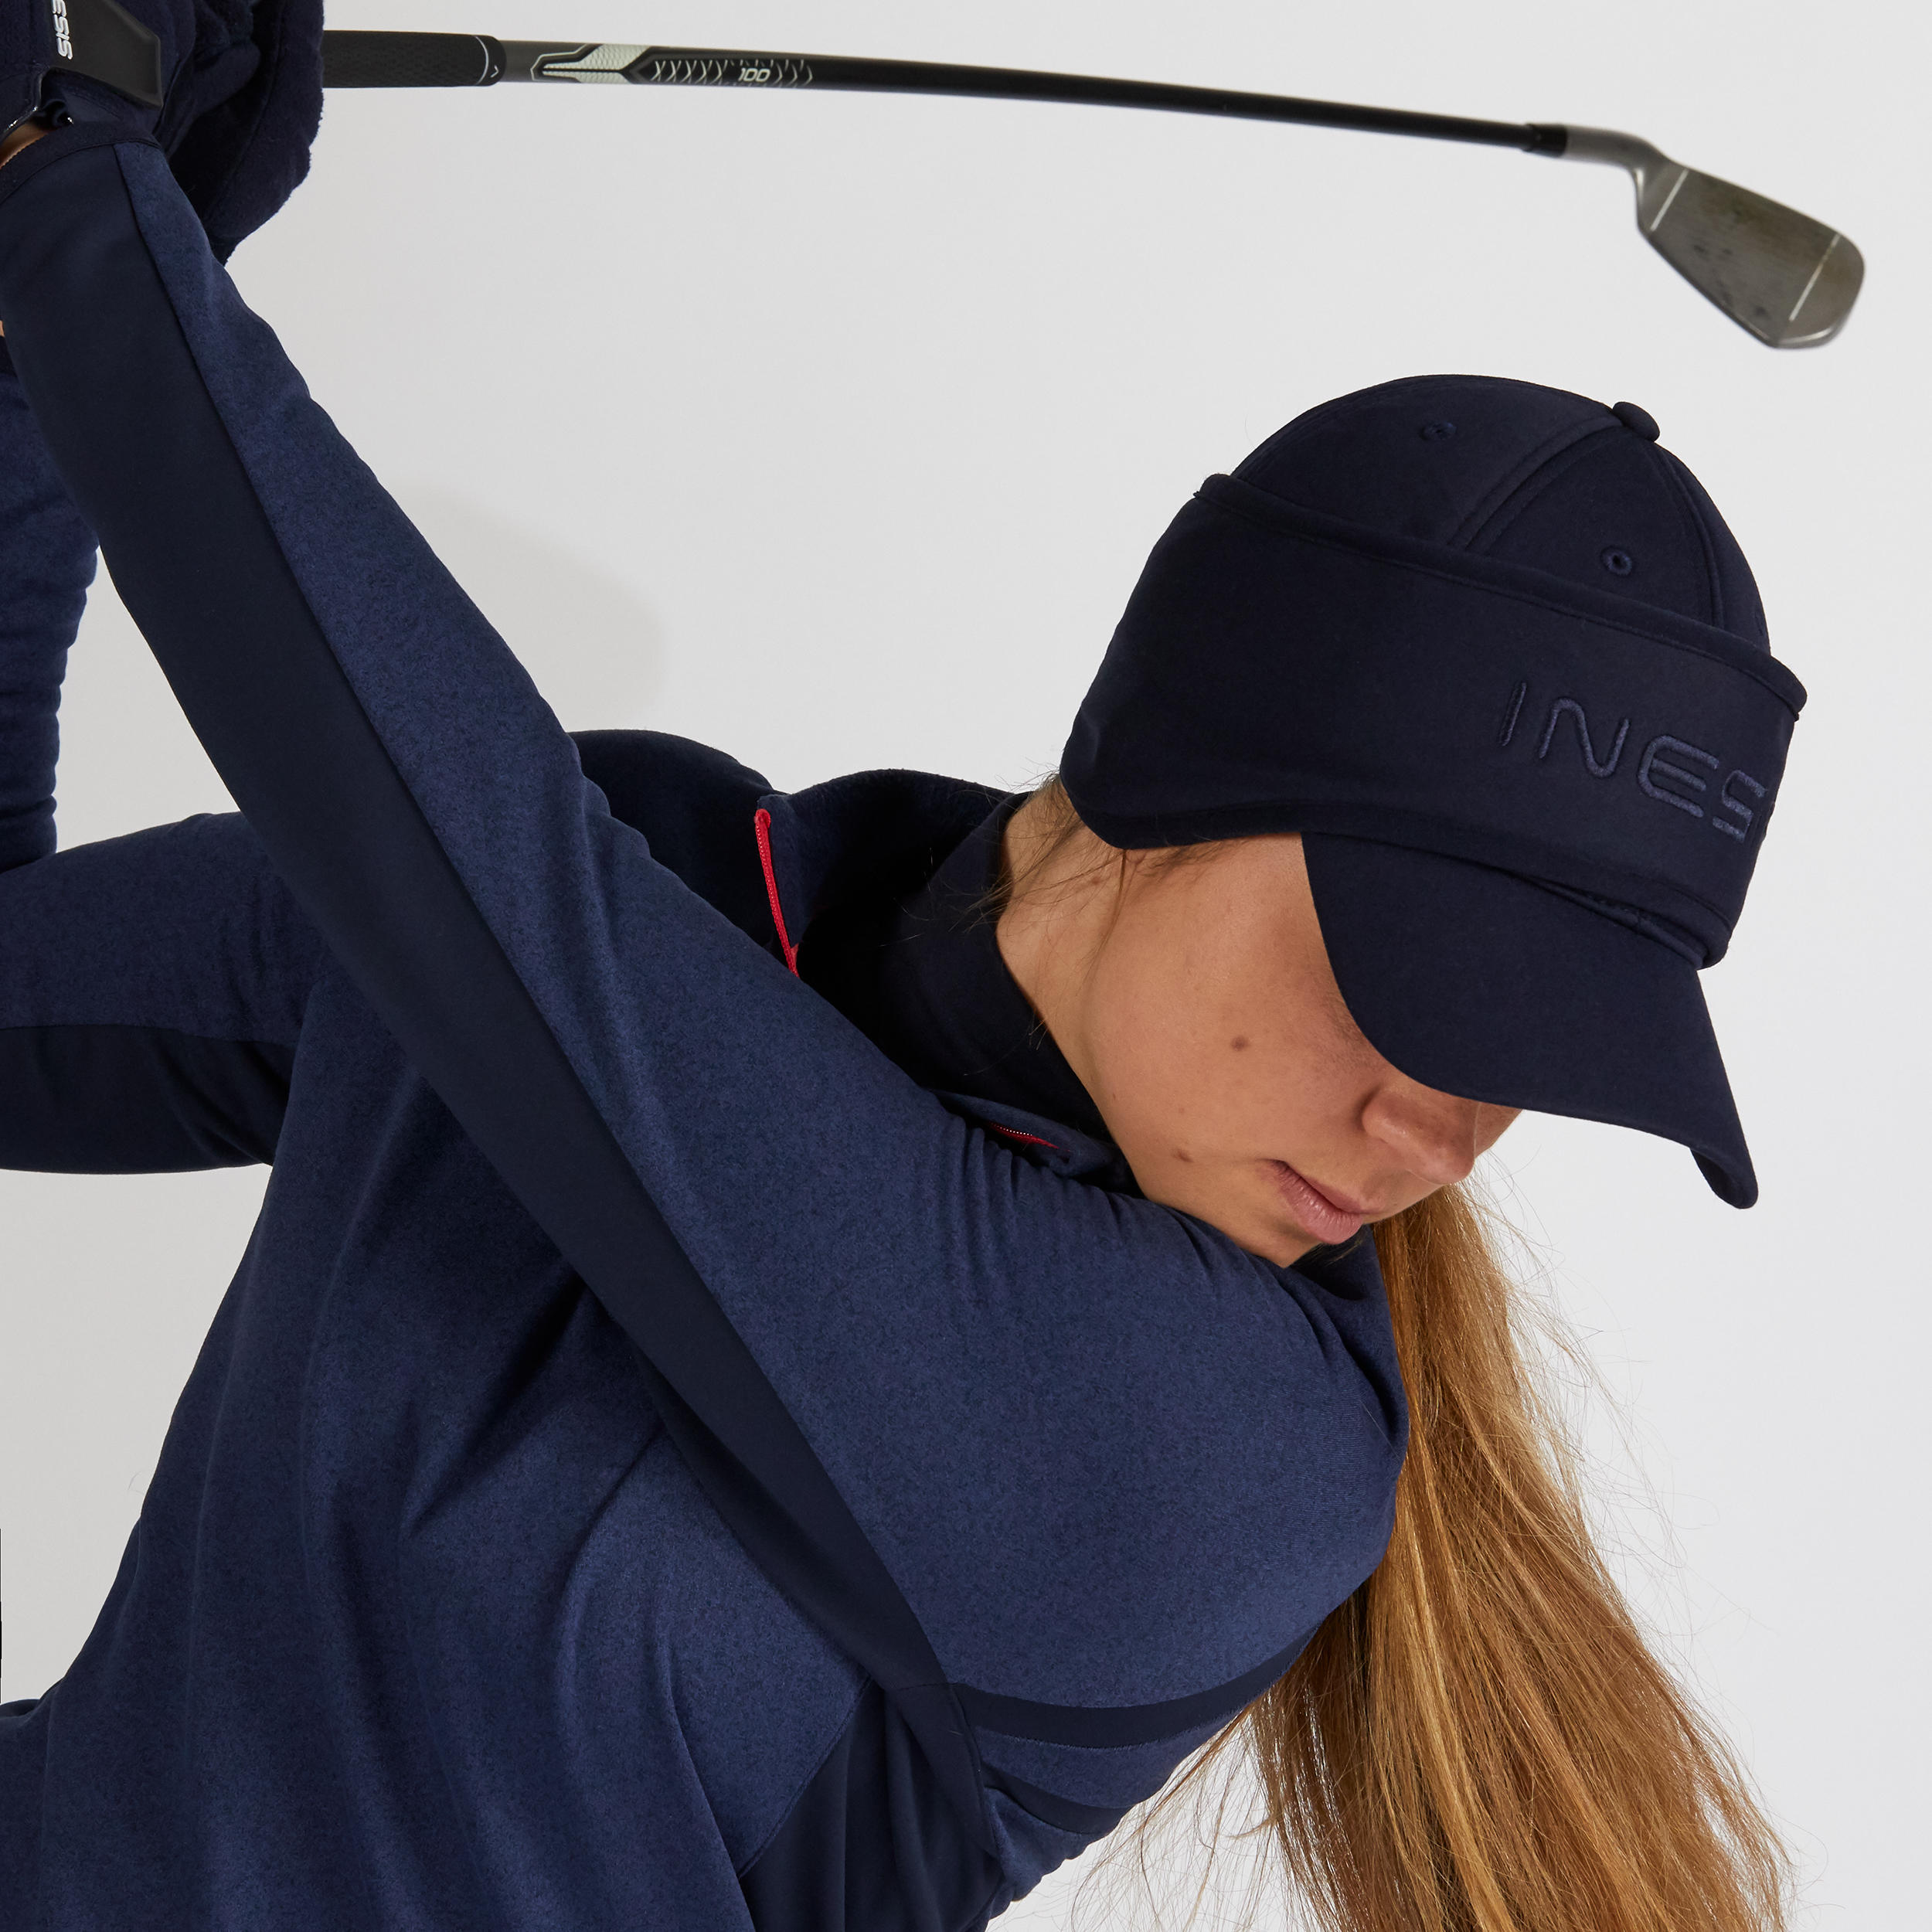 Women's winter golf headband cap CW500 navy blue 6/7